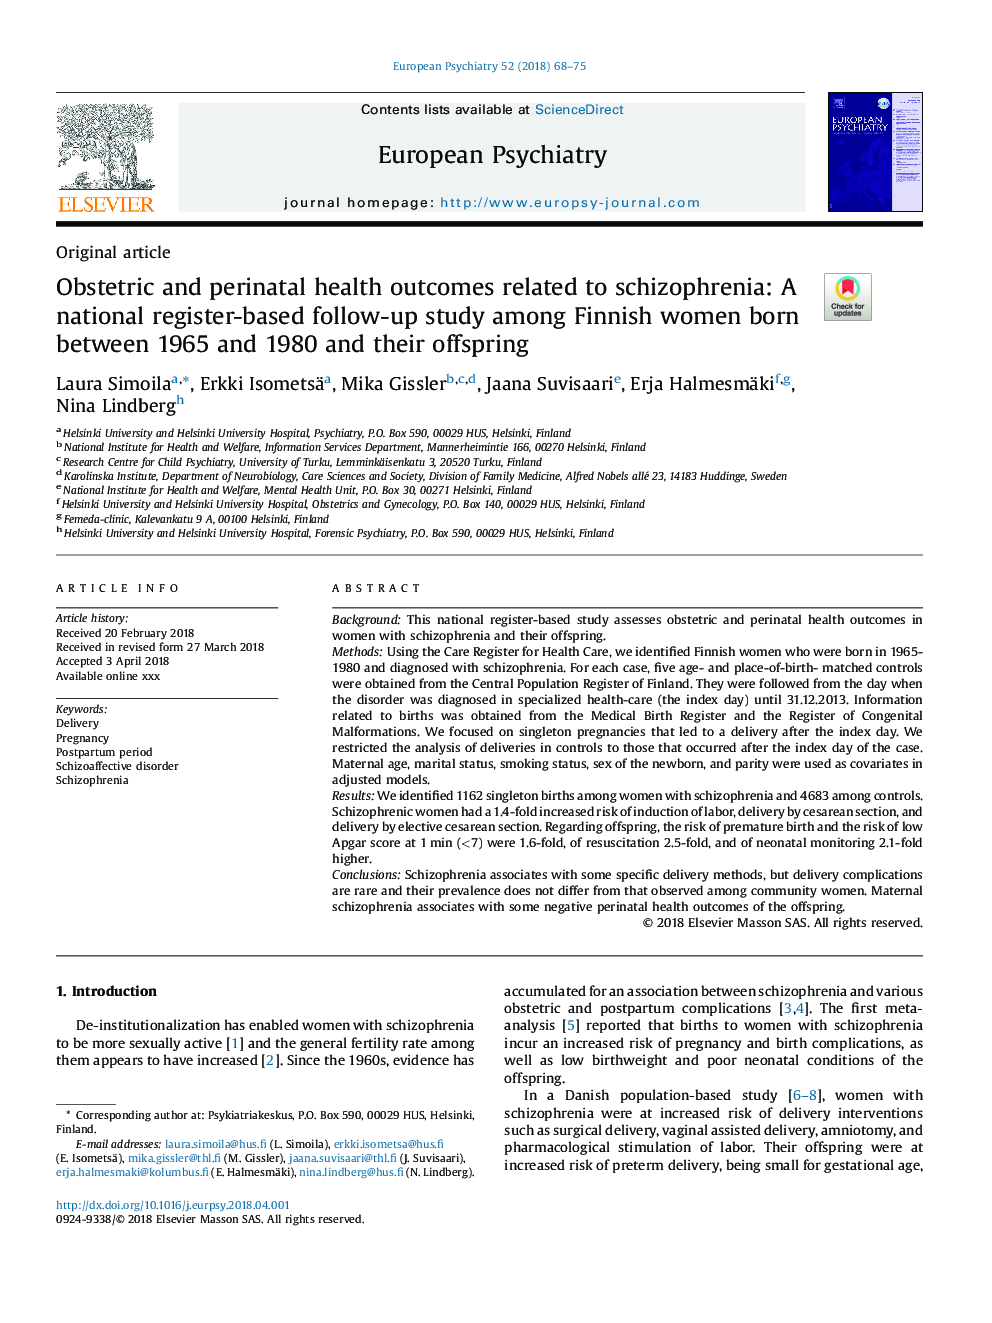 نتایج مراقبتهای بهداشتی و پری ناتال مربوط به اسکیزوفرنی: یک مطالعه پیگیری مبتنی بر ثبت ملی در میان زنان فنلاند بین سالهای 1965 و 1980 و فرزندانشان 